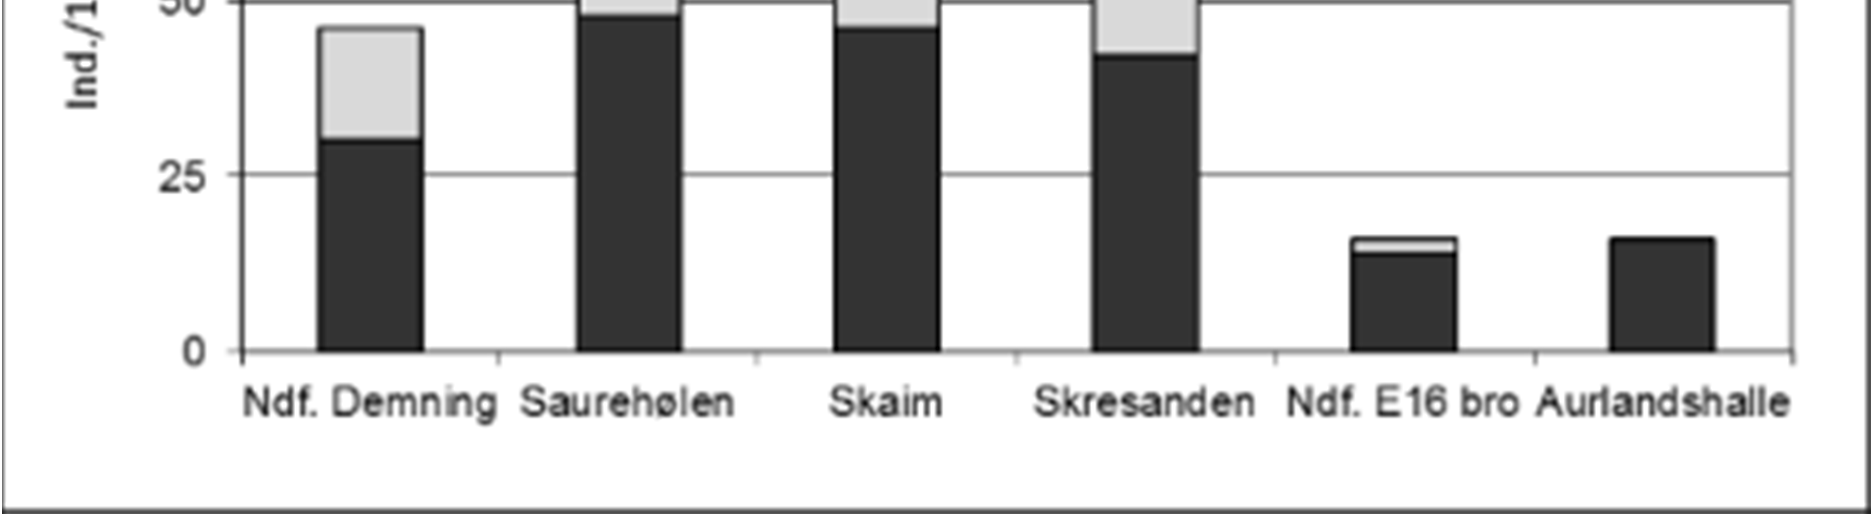 Resultater 32 Ungfisktetthet laks 2010 100 75 laks eldre laks 0+ Ind./100 m 2 50 25 0 Ndf. Demning Saurehølen Skaim Skresanden Ndf.